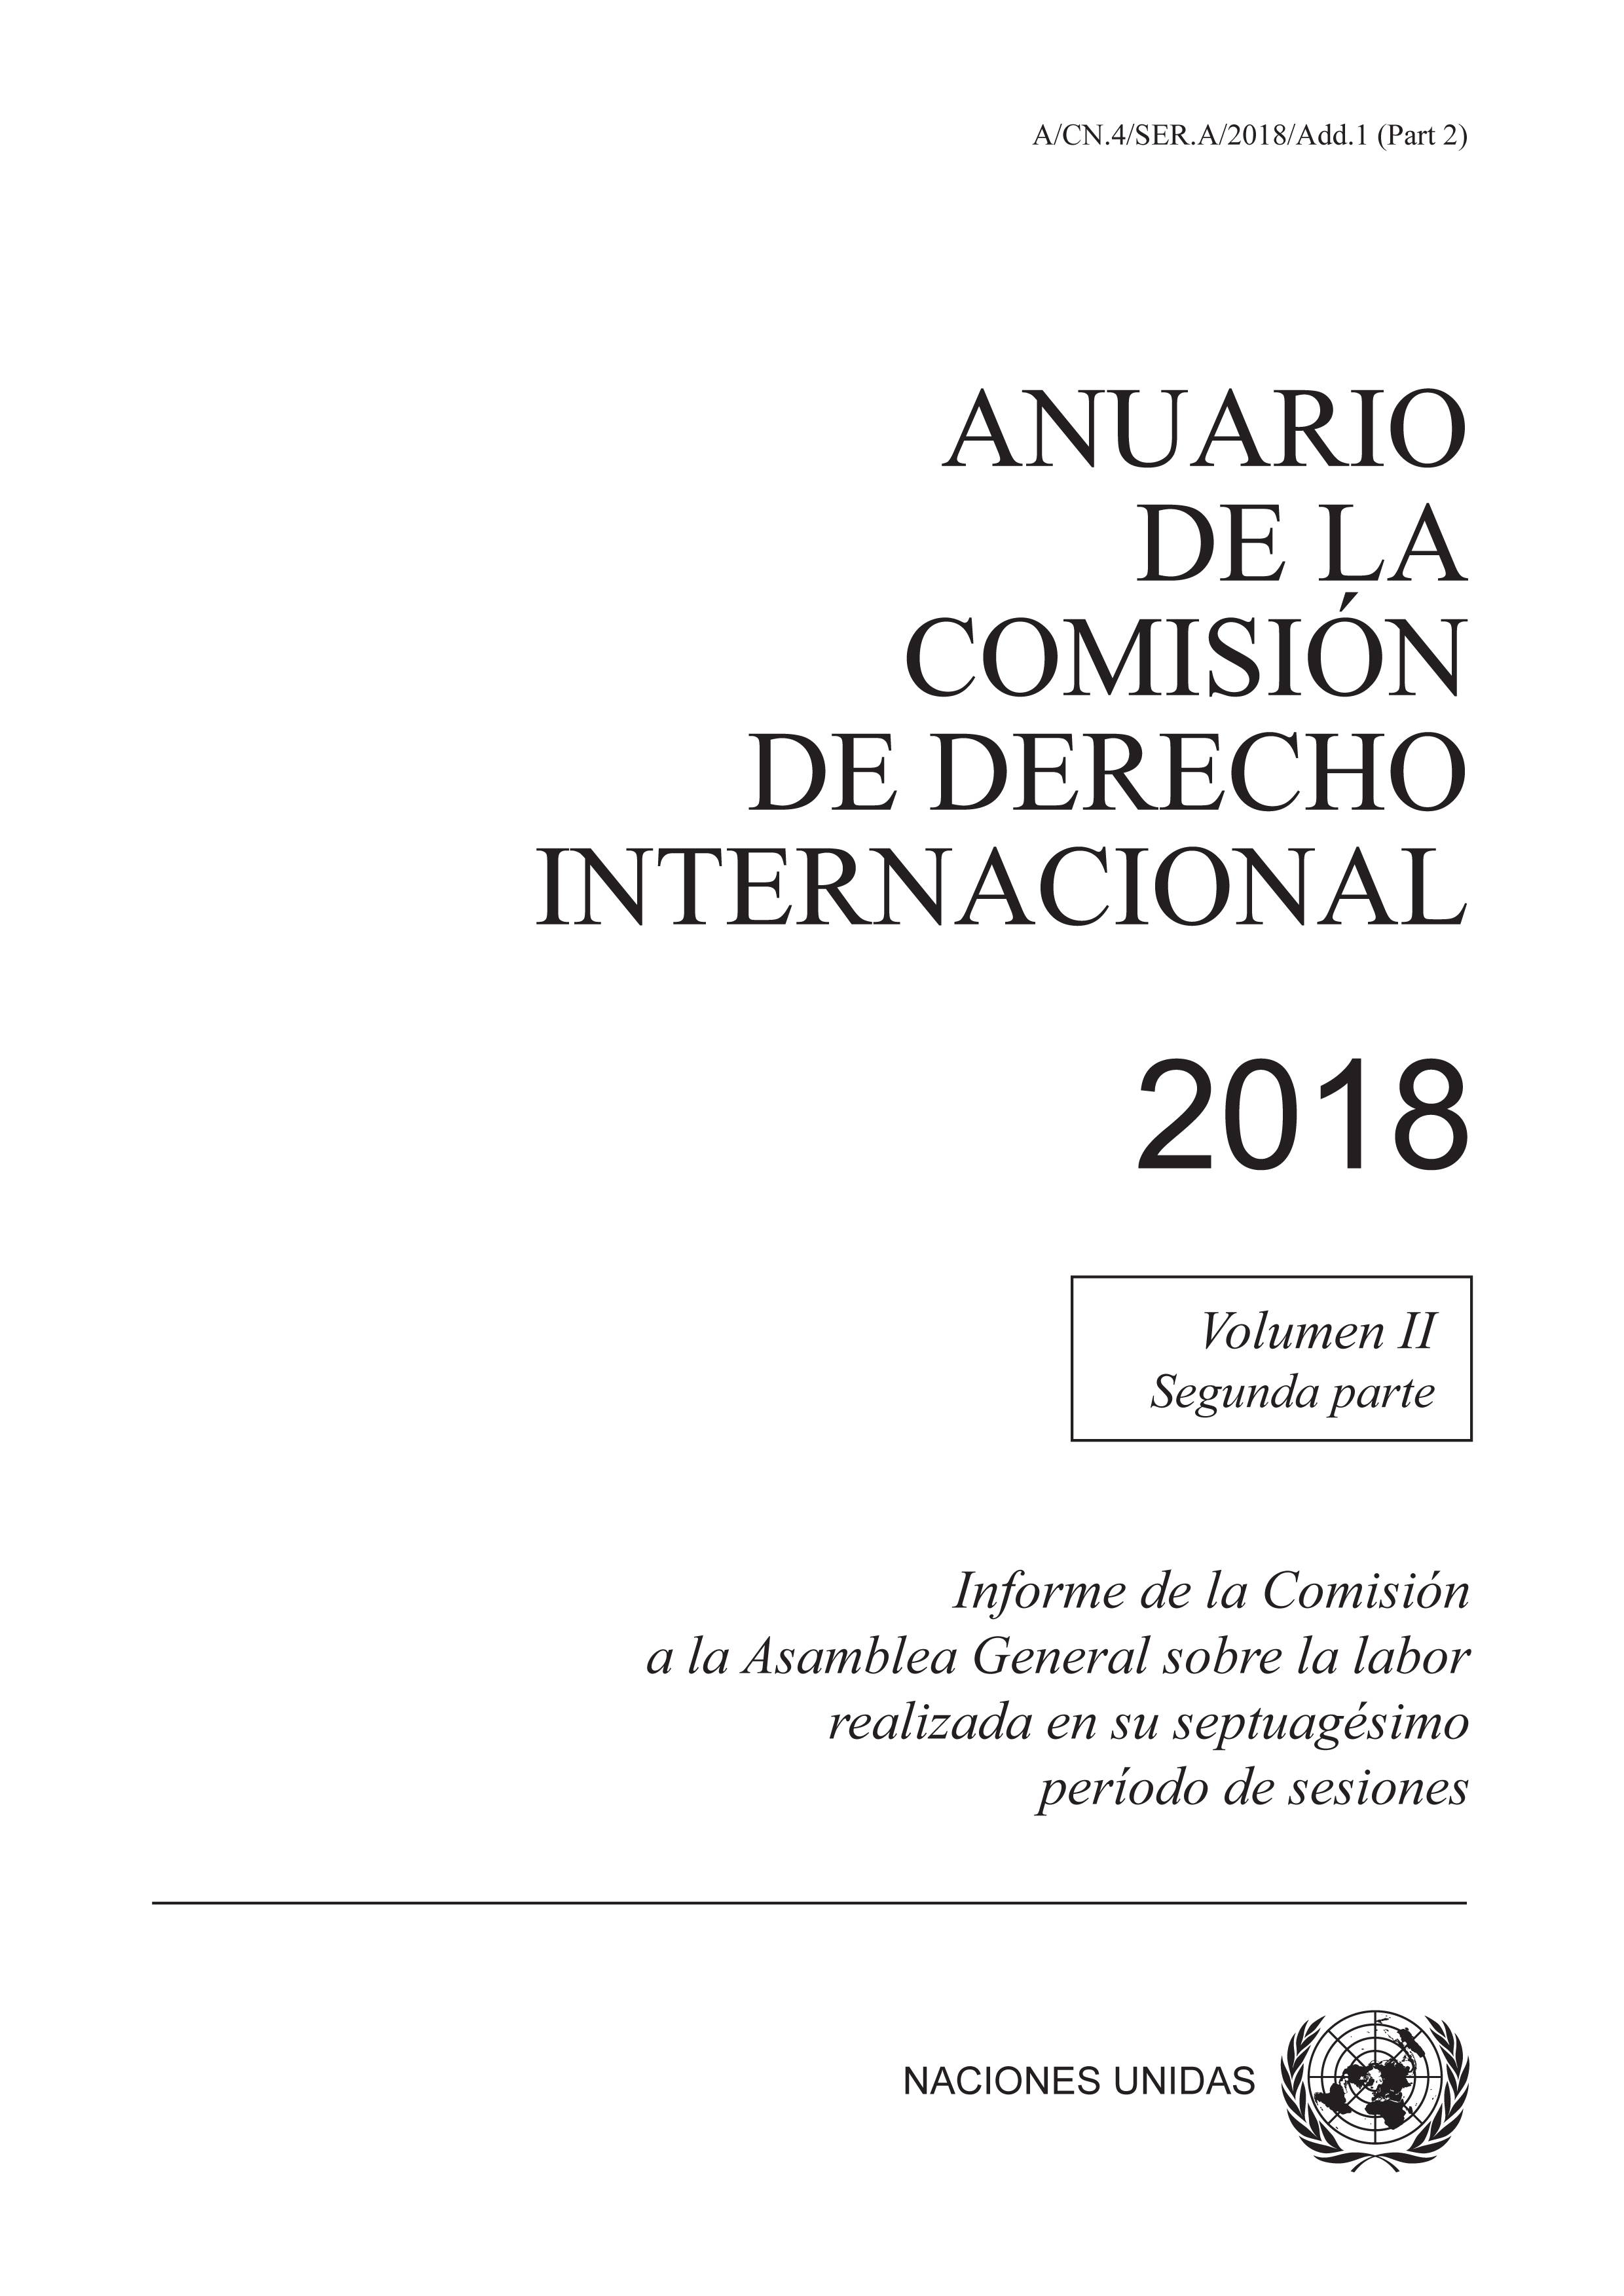 image of Anuario de la Comisión de Derecho Internacional 2018, Vol. II, Parte 2